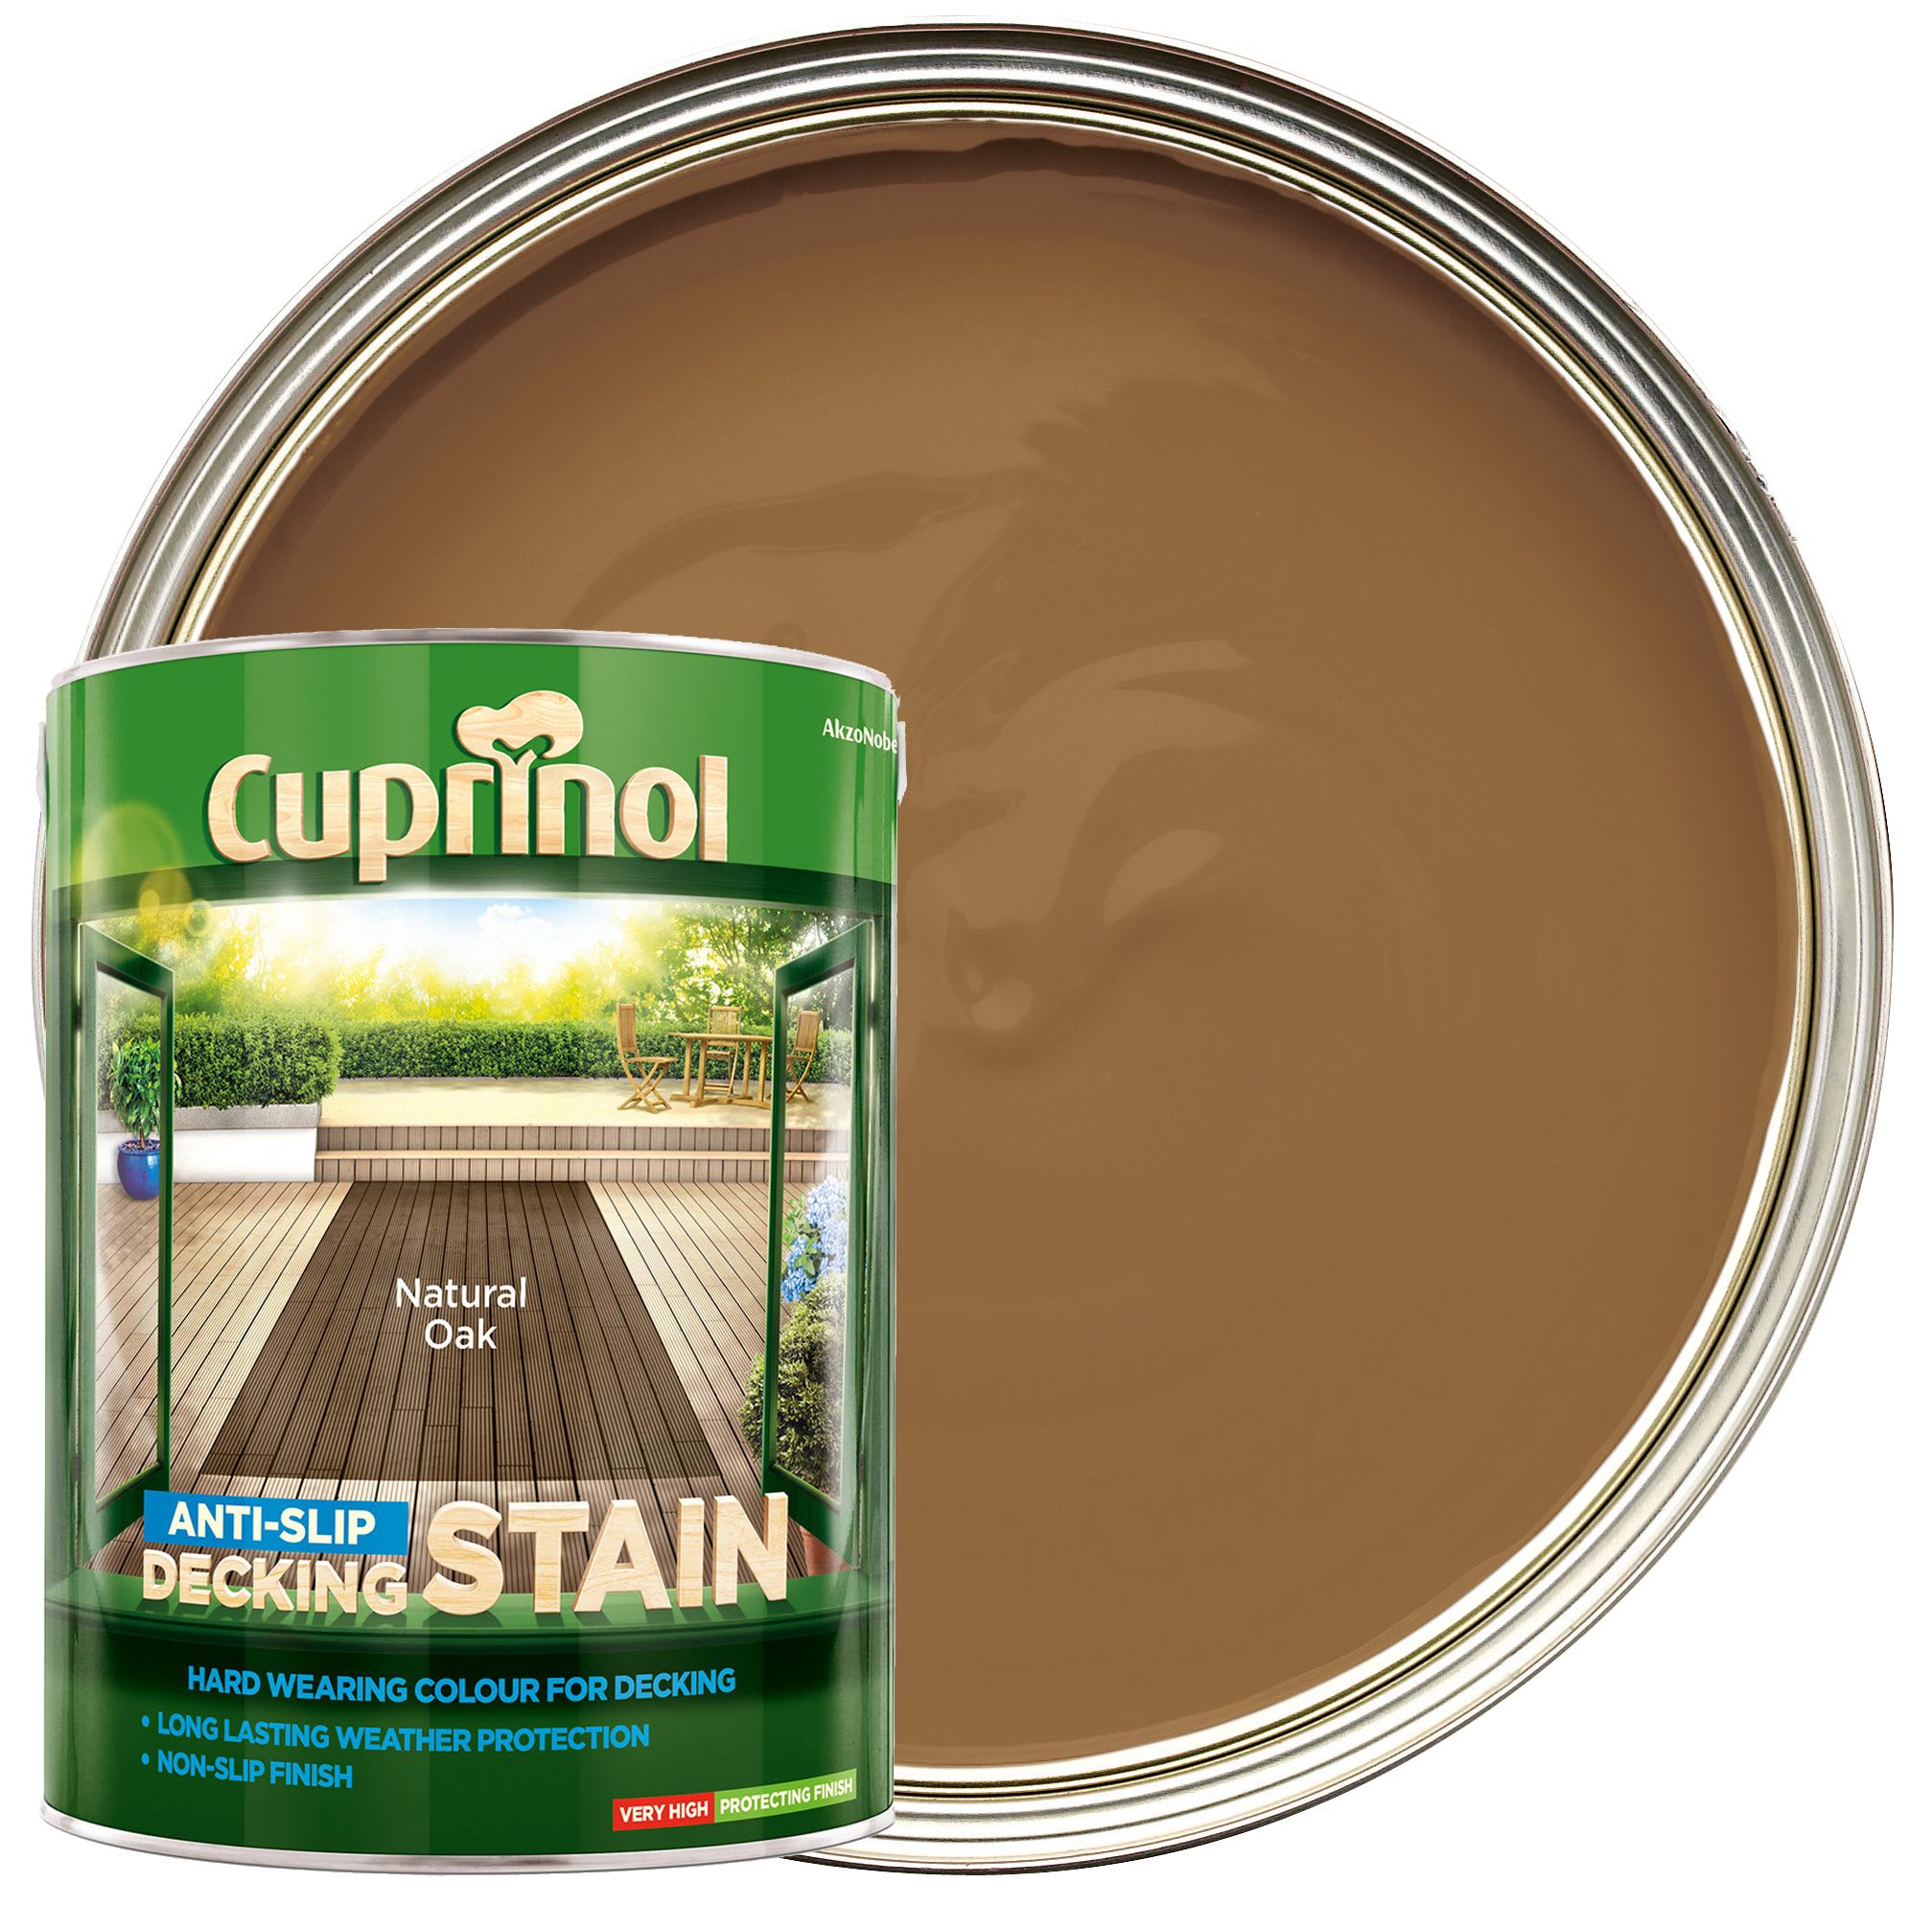 Cuprinol Anti-Slip Decking Stain - Natural Oak 5L